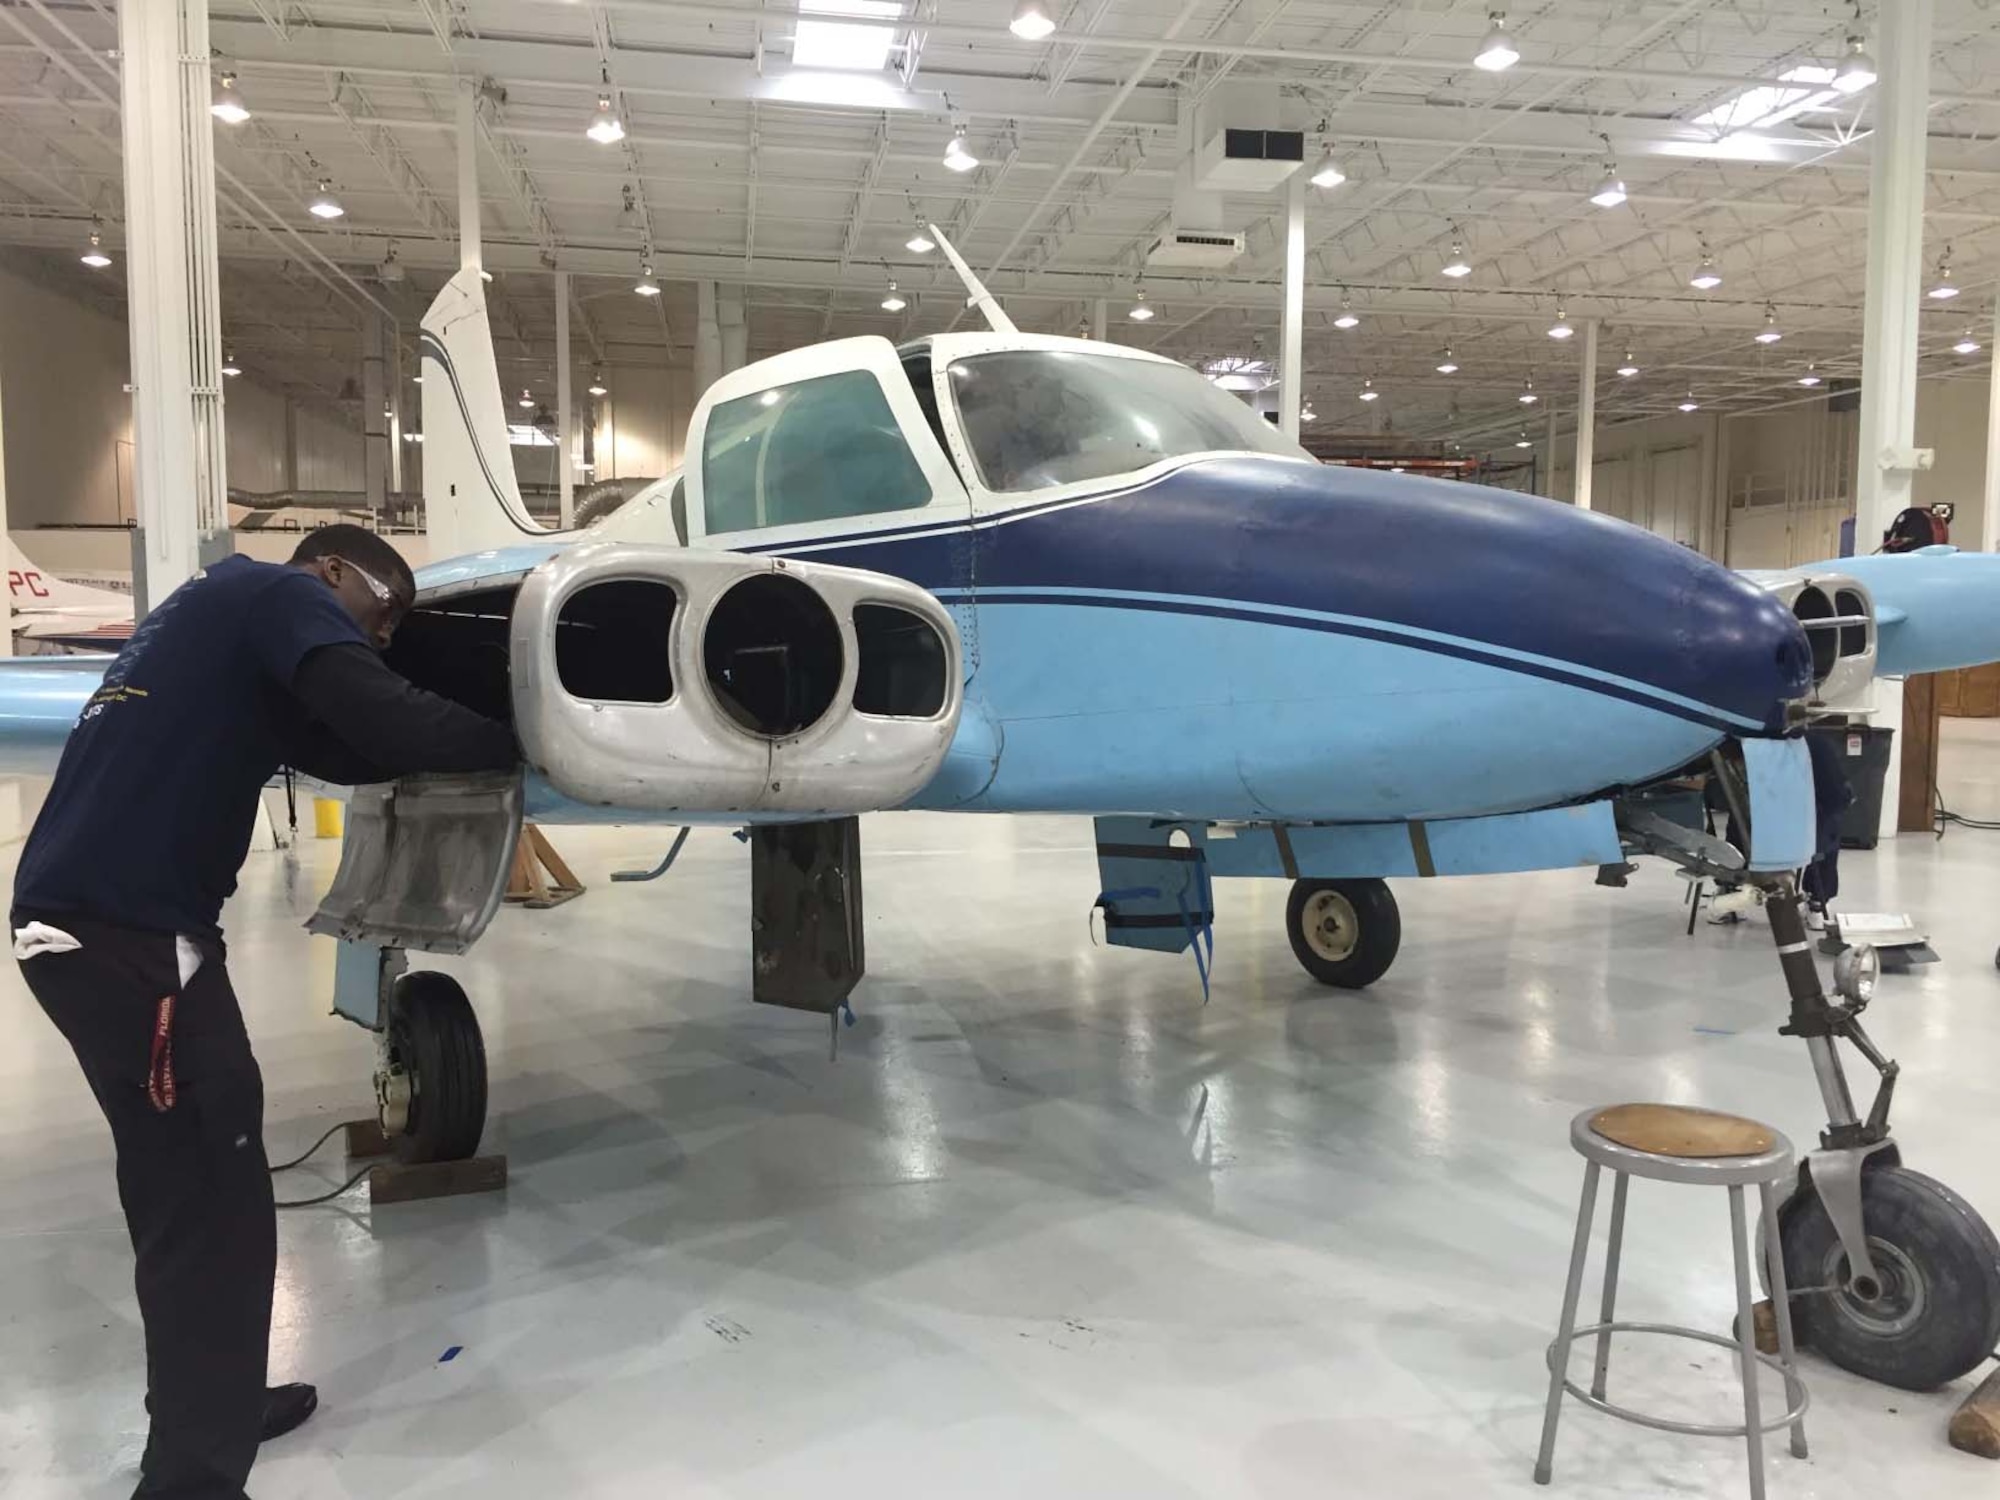 Senior Airman Roy Graham works on an aircraft. (courtesy photo)